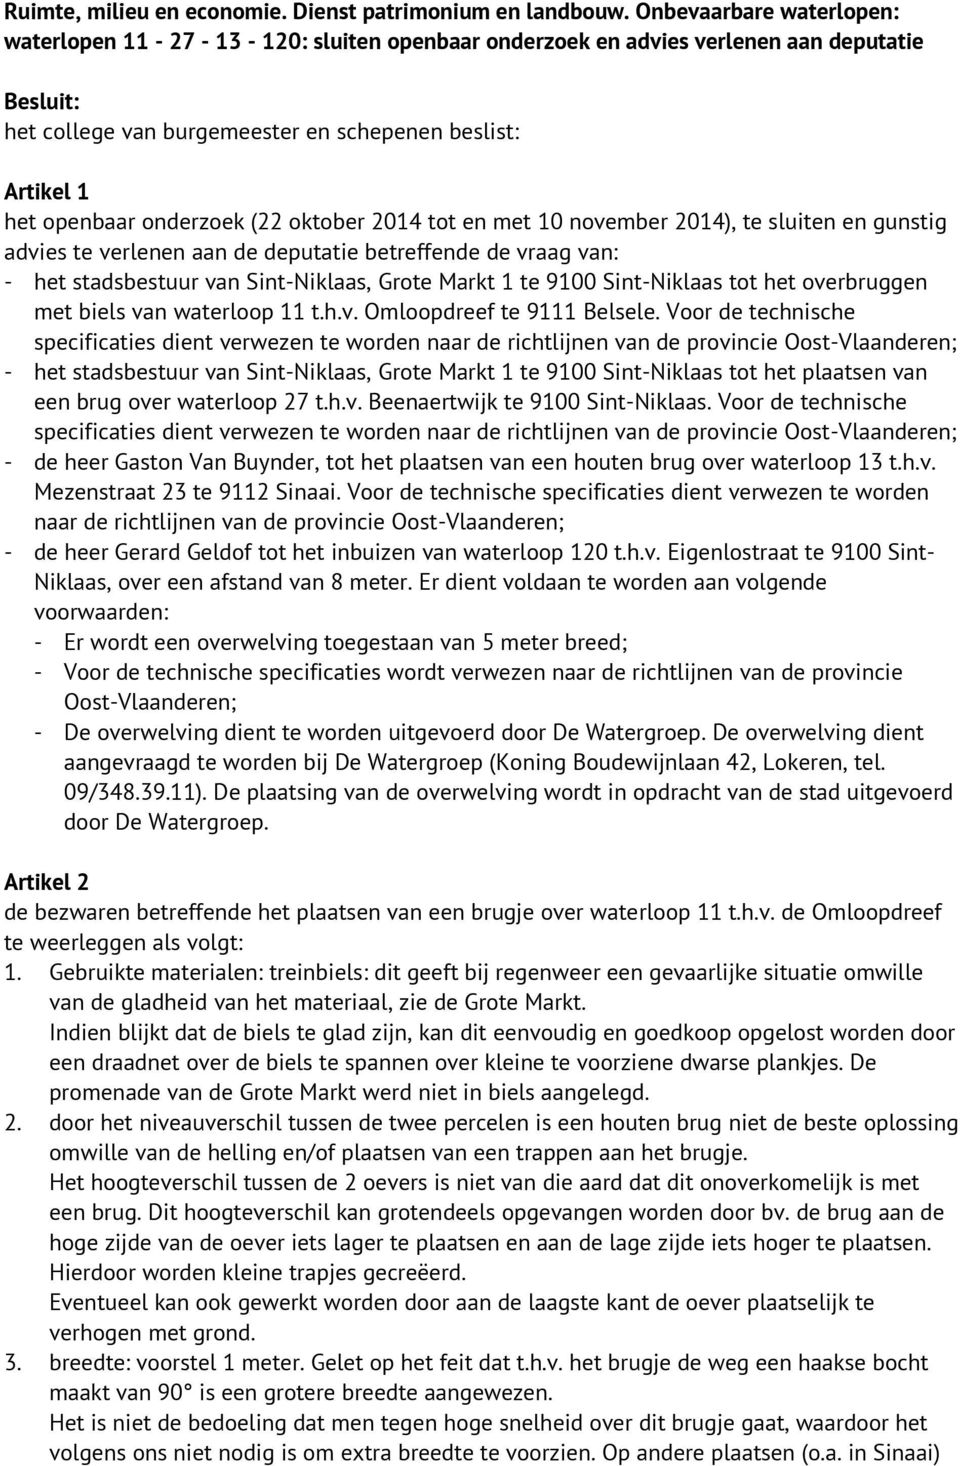 gunstig advies te verlenen aan de deputatie betreffende de vraag van: - het stadsbestuur van Sint-Niklaas, Grote Markt 1 te 9100 Sint-Niklaas tot het overbruggen met biels van waterloop 11 t.h.v. Omloopdreef te 9111 Belsele.